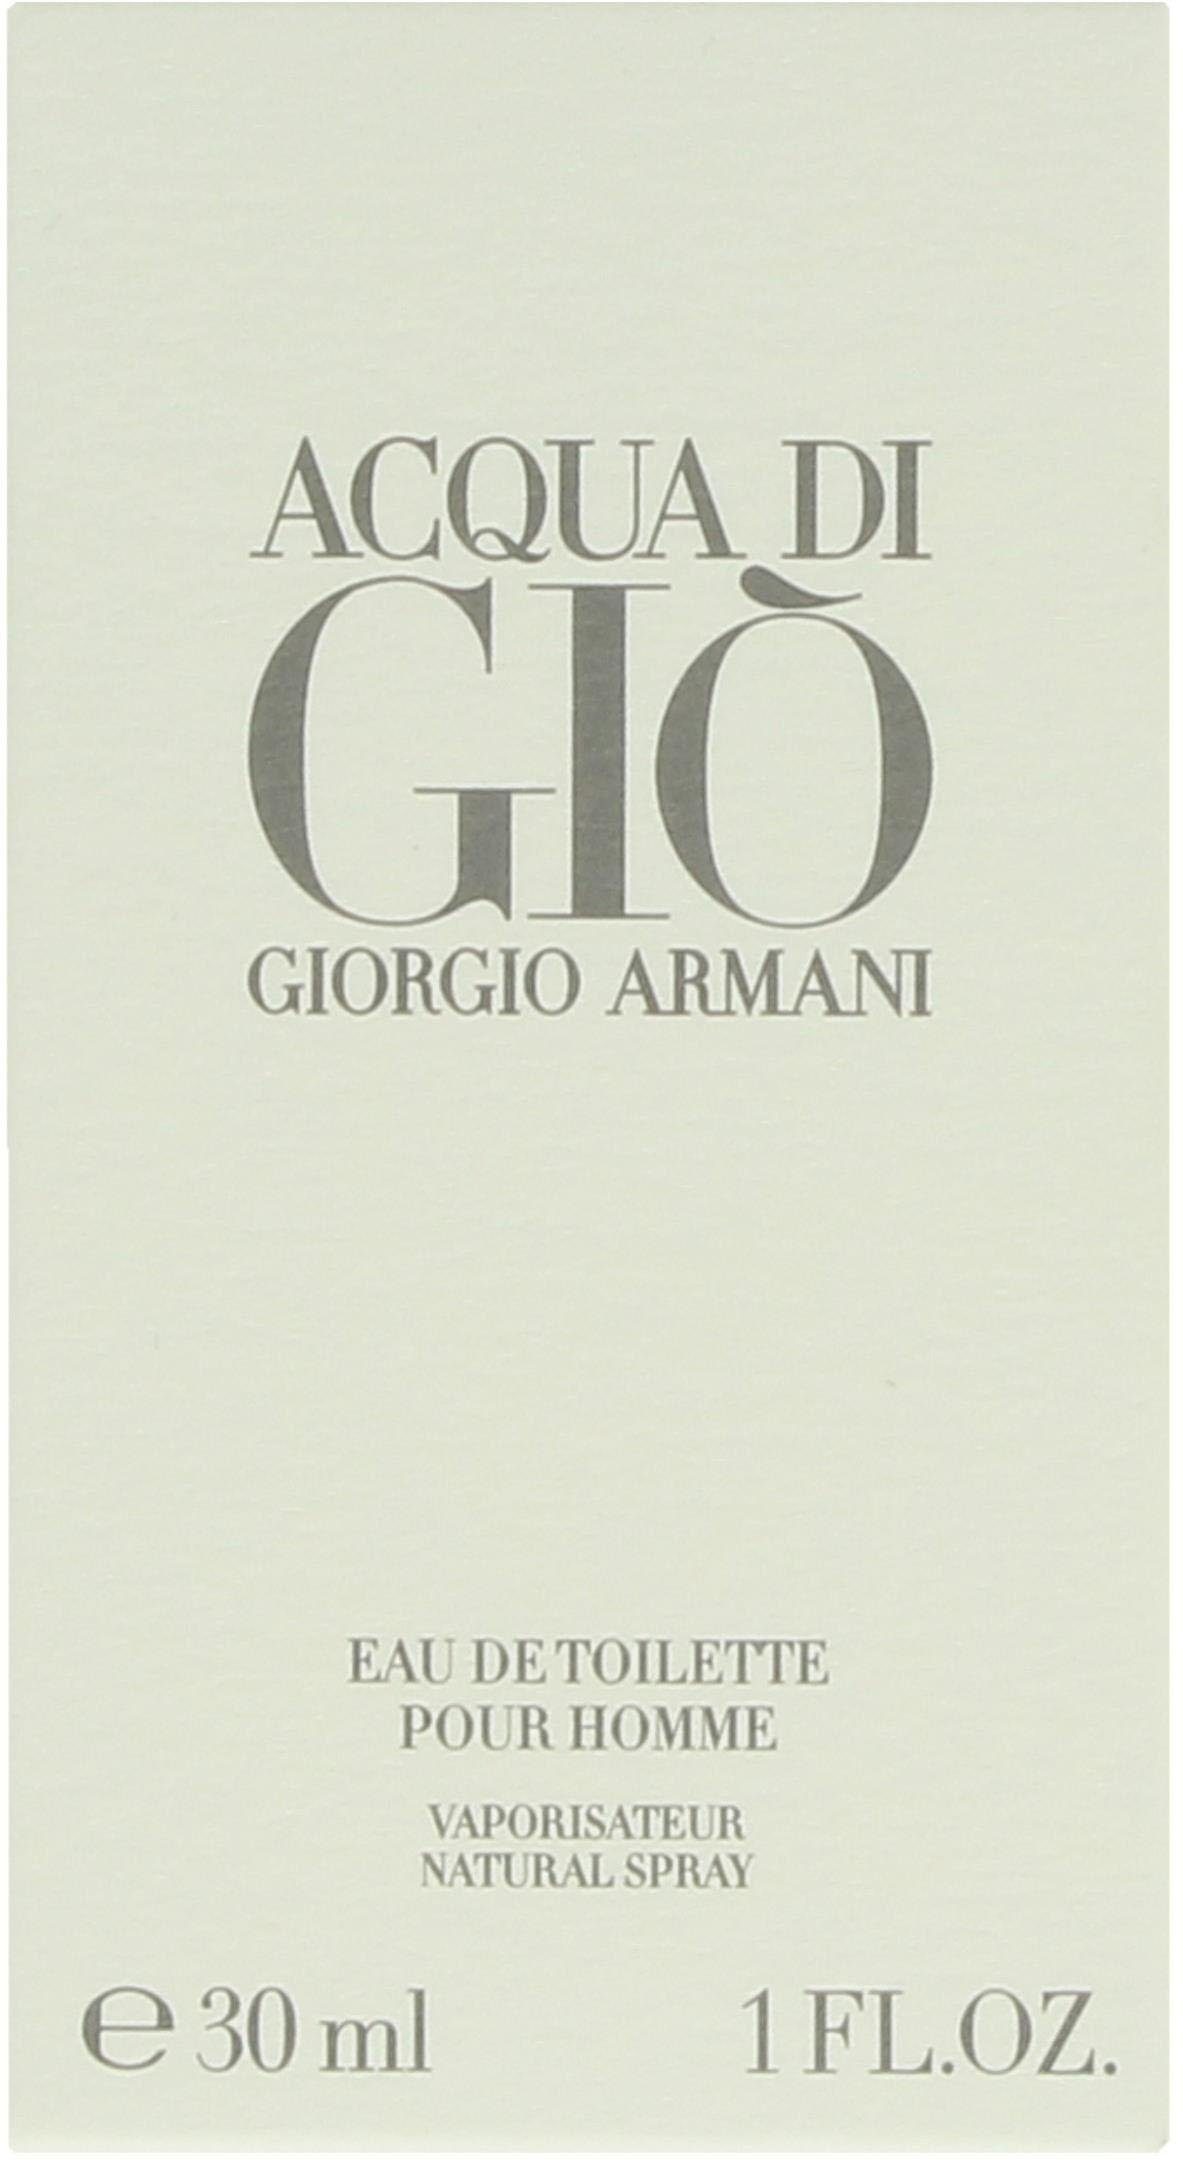 de Armani Gio Eau Toilette di Giorgio Acqua